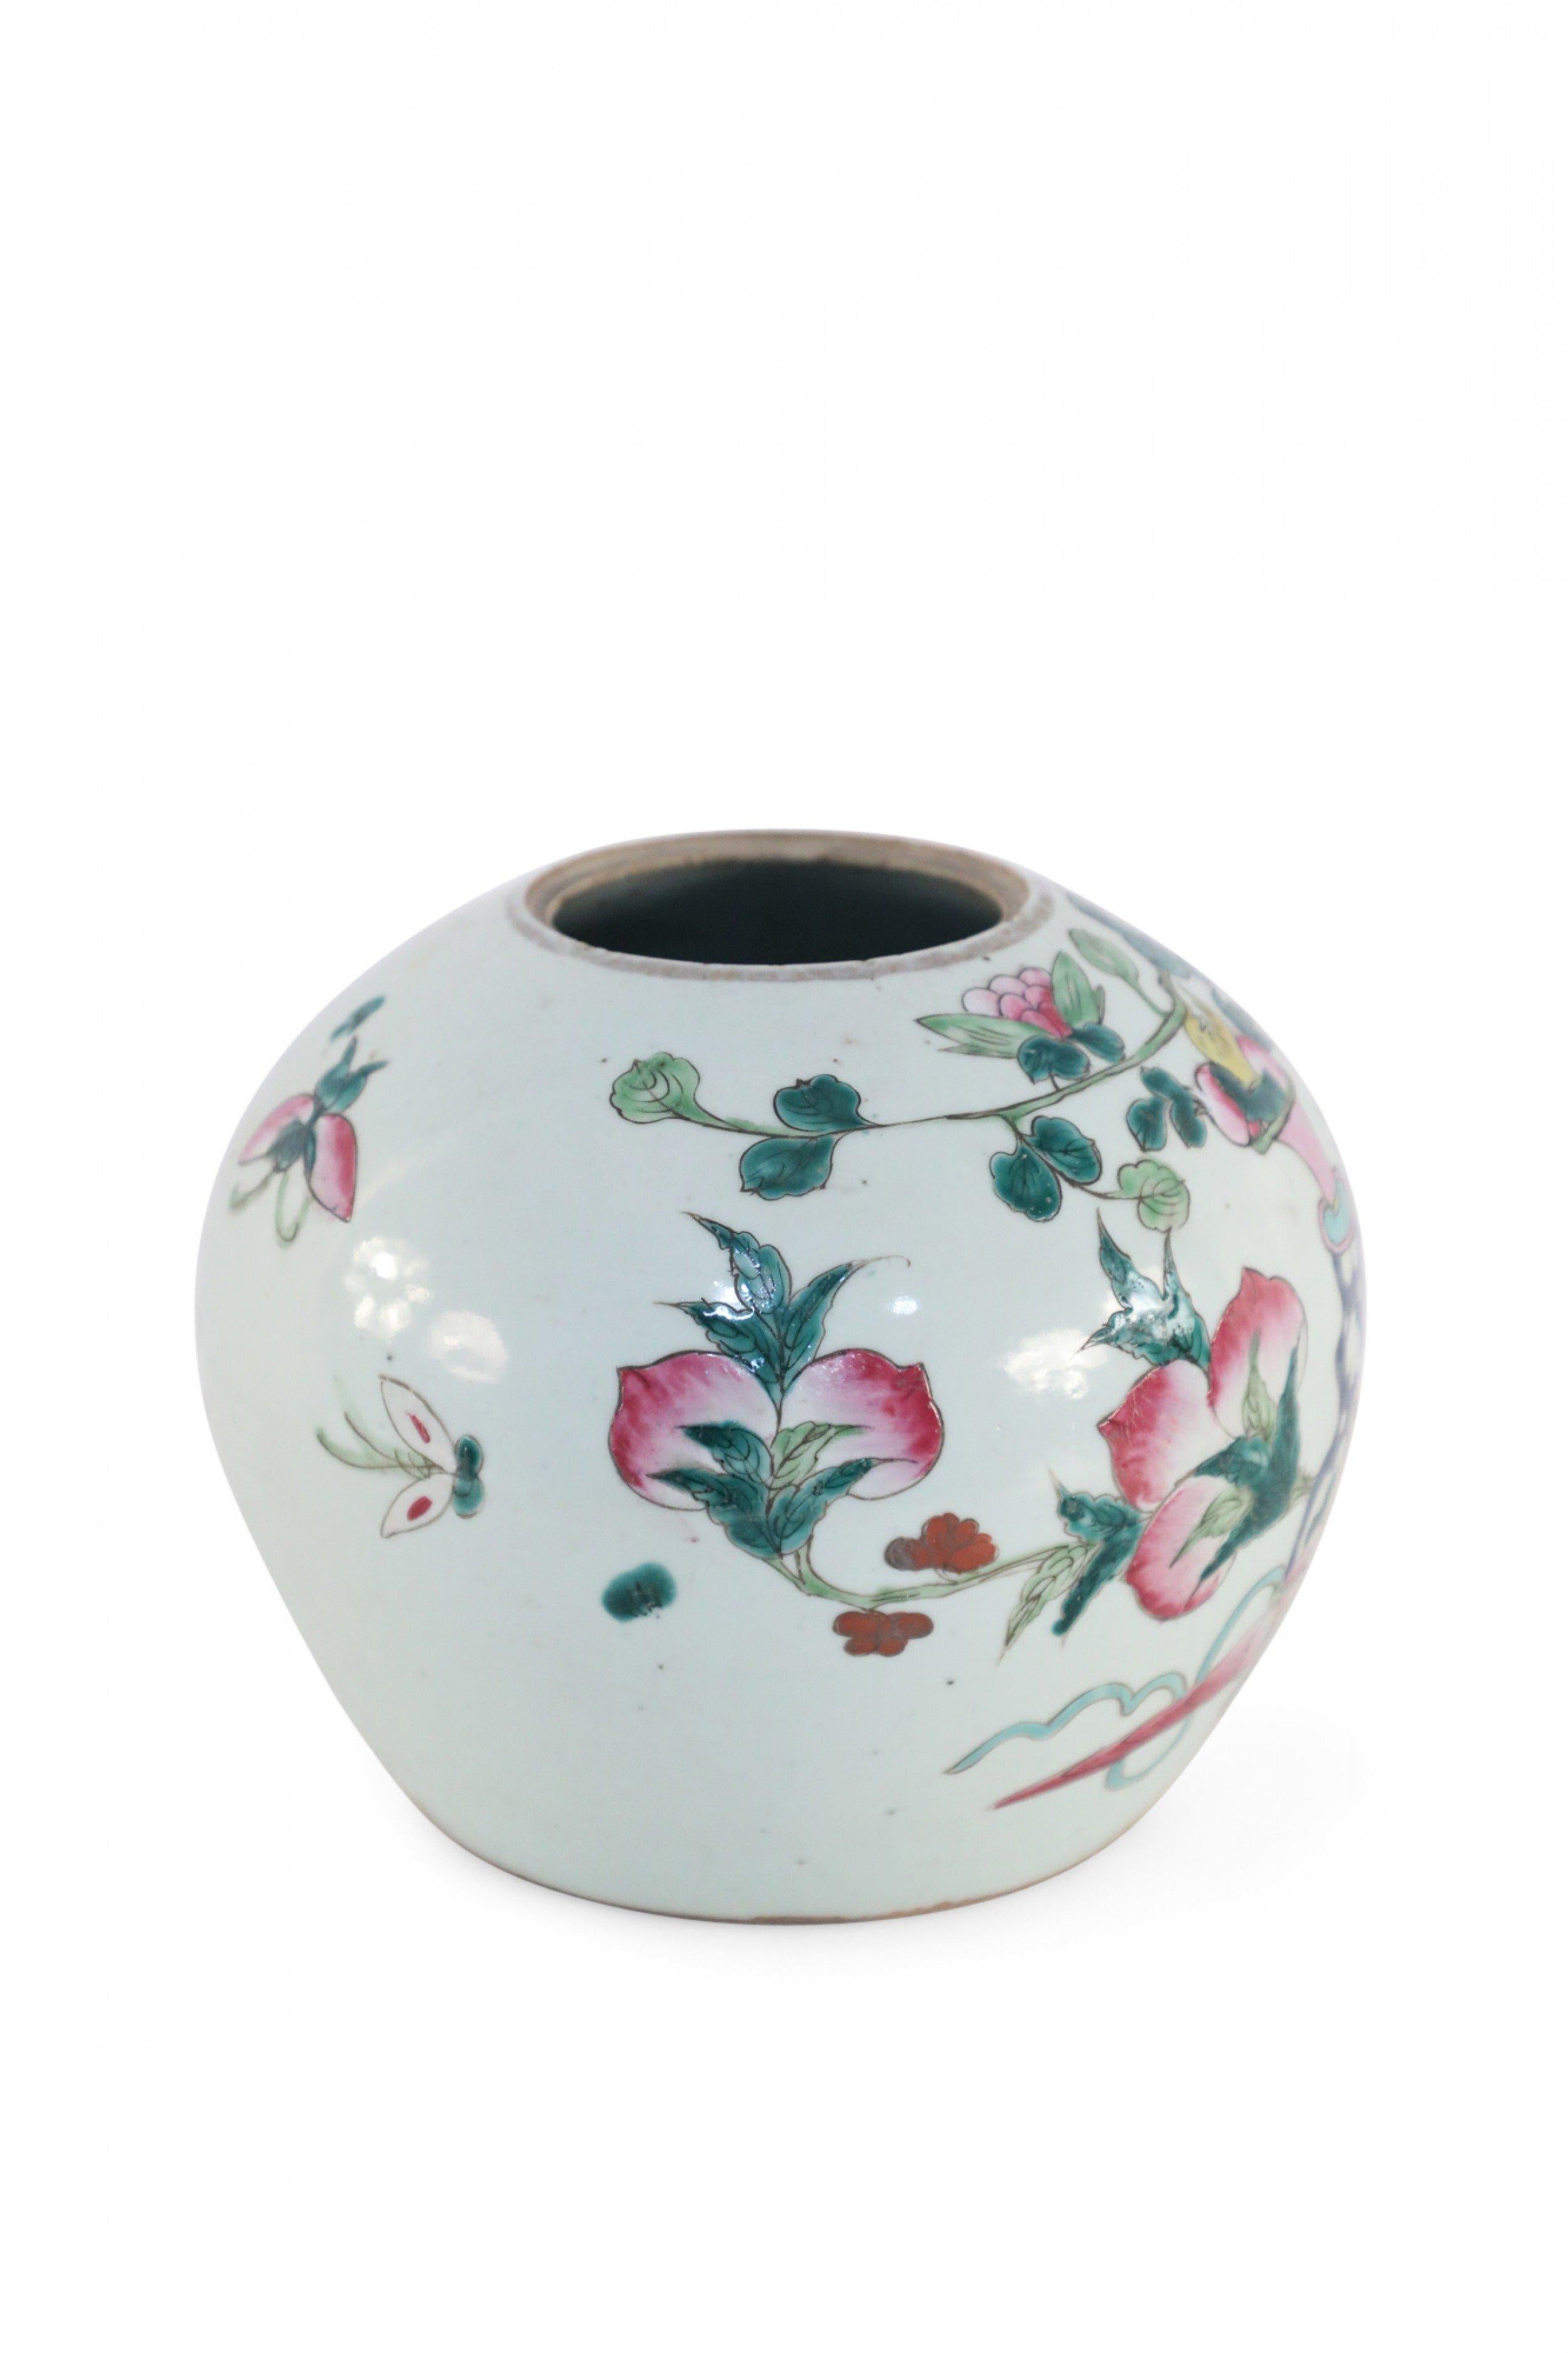 Antike chinesische (frühes 20. Jahrhundert) niedrige, runde Porzellanvase, bekannt als Wassermelonenglas, eingeritzt und bemalt mit einer Reihe von Dekorationen wie Blumenarrangements in Urnen, Glocken, kleinen Möbeln und Schmetterlingen.
 